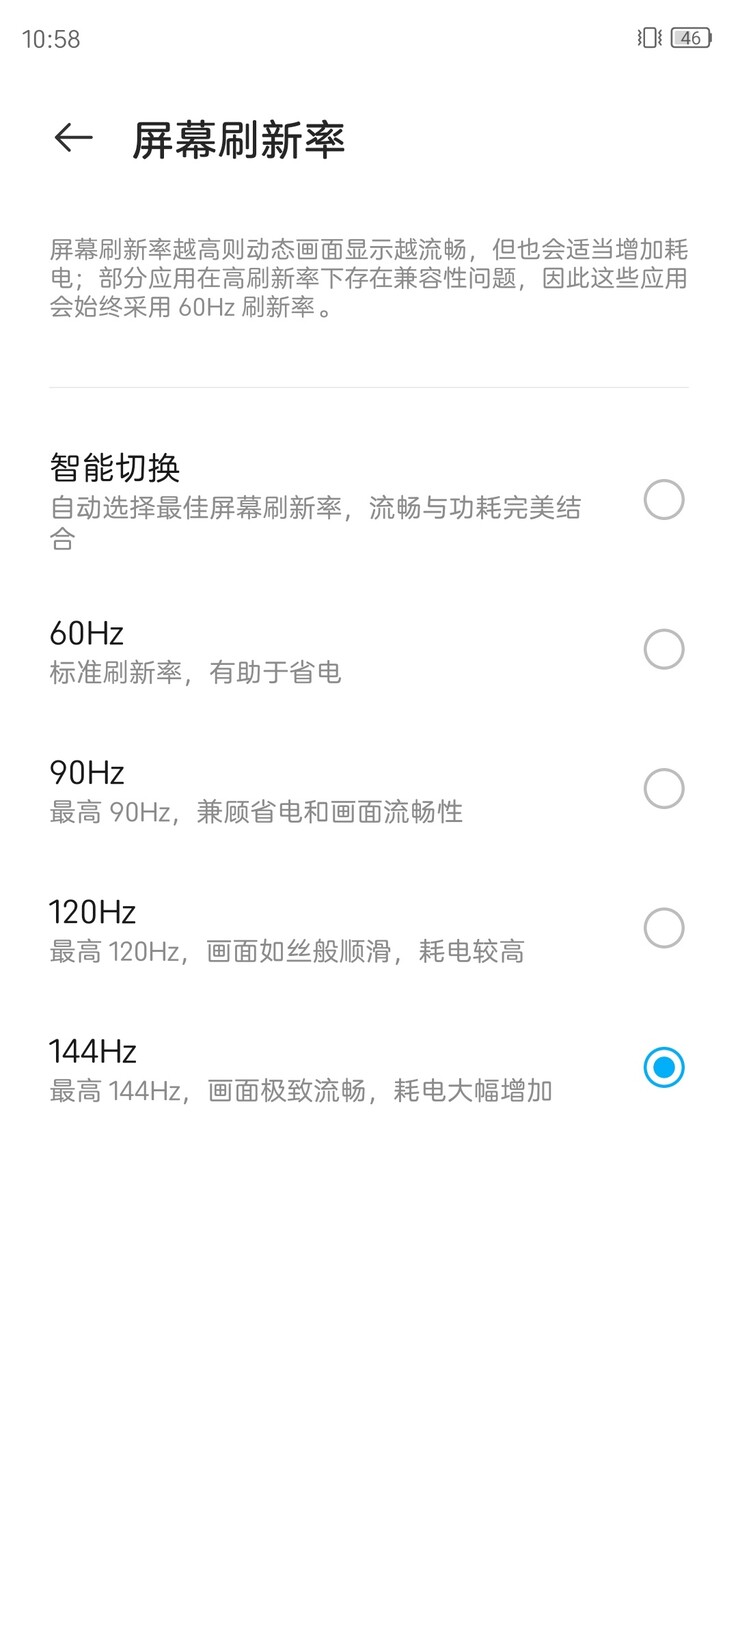 Le nuove impostazioni di refresh rate dell'Axon 30 Pro. (Fonte: ZTE via Weibo)